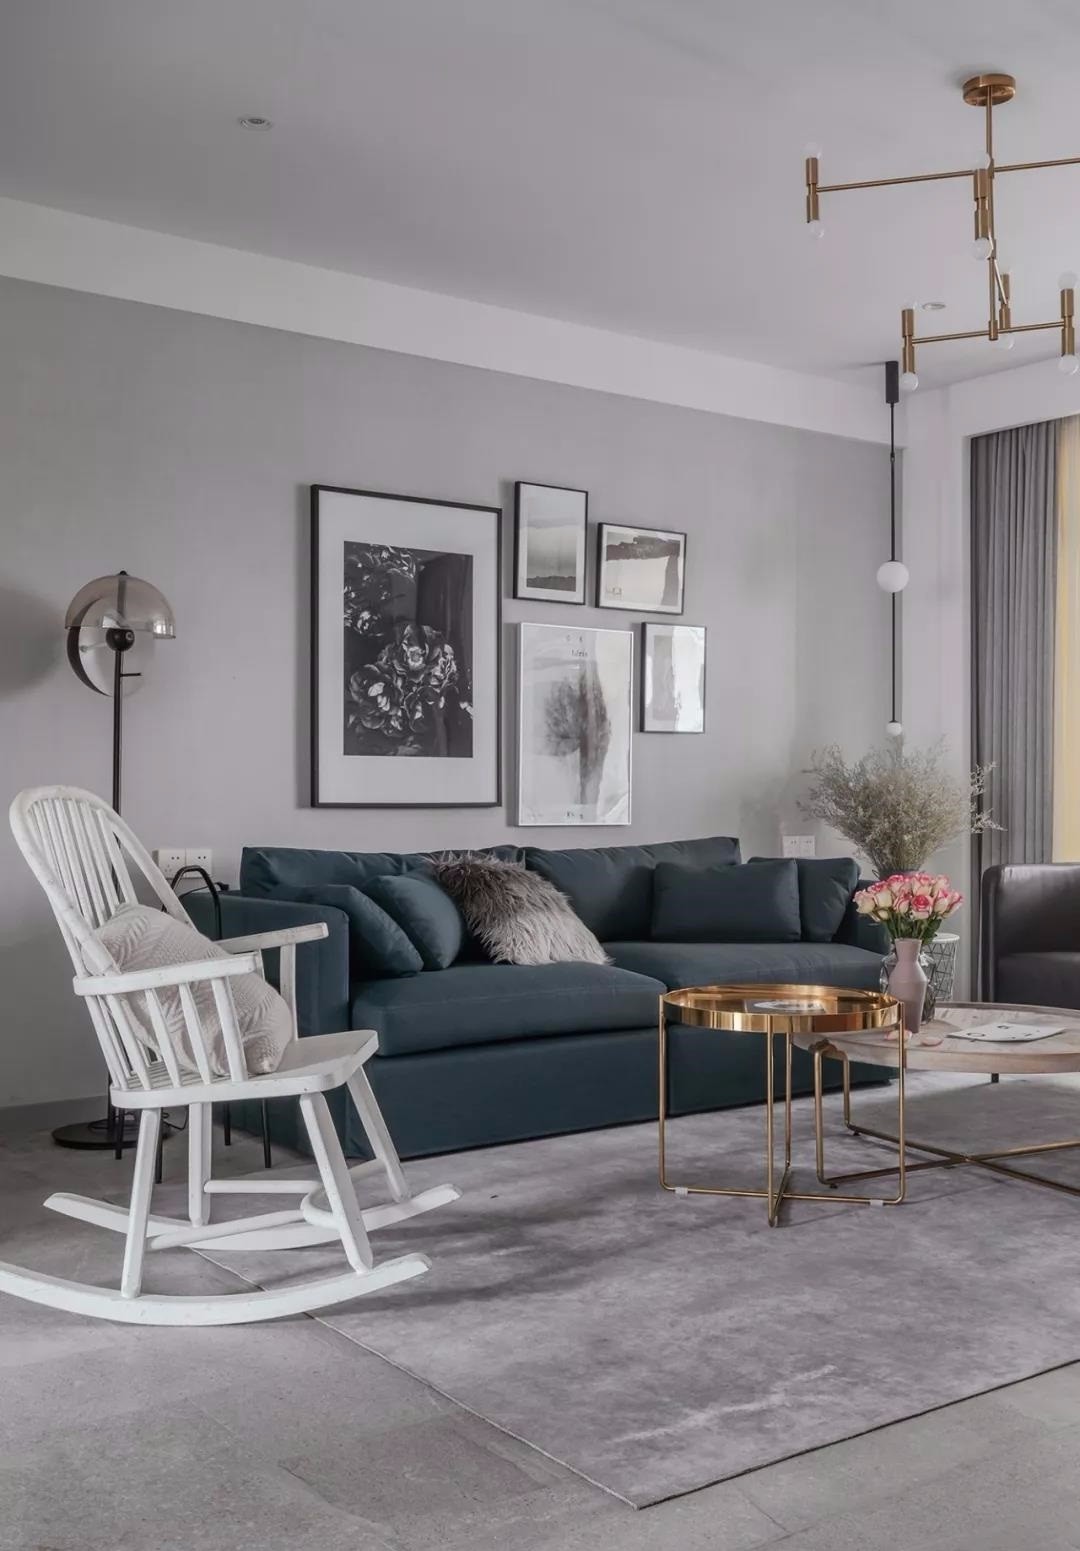 深蓝色布艺沙发搭配深灰色皮质单椅,木质铁件圆形茶几散发精致复古的